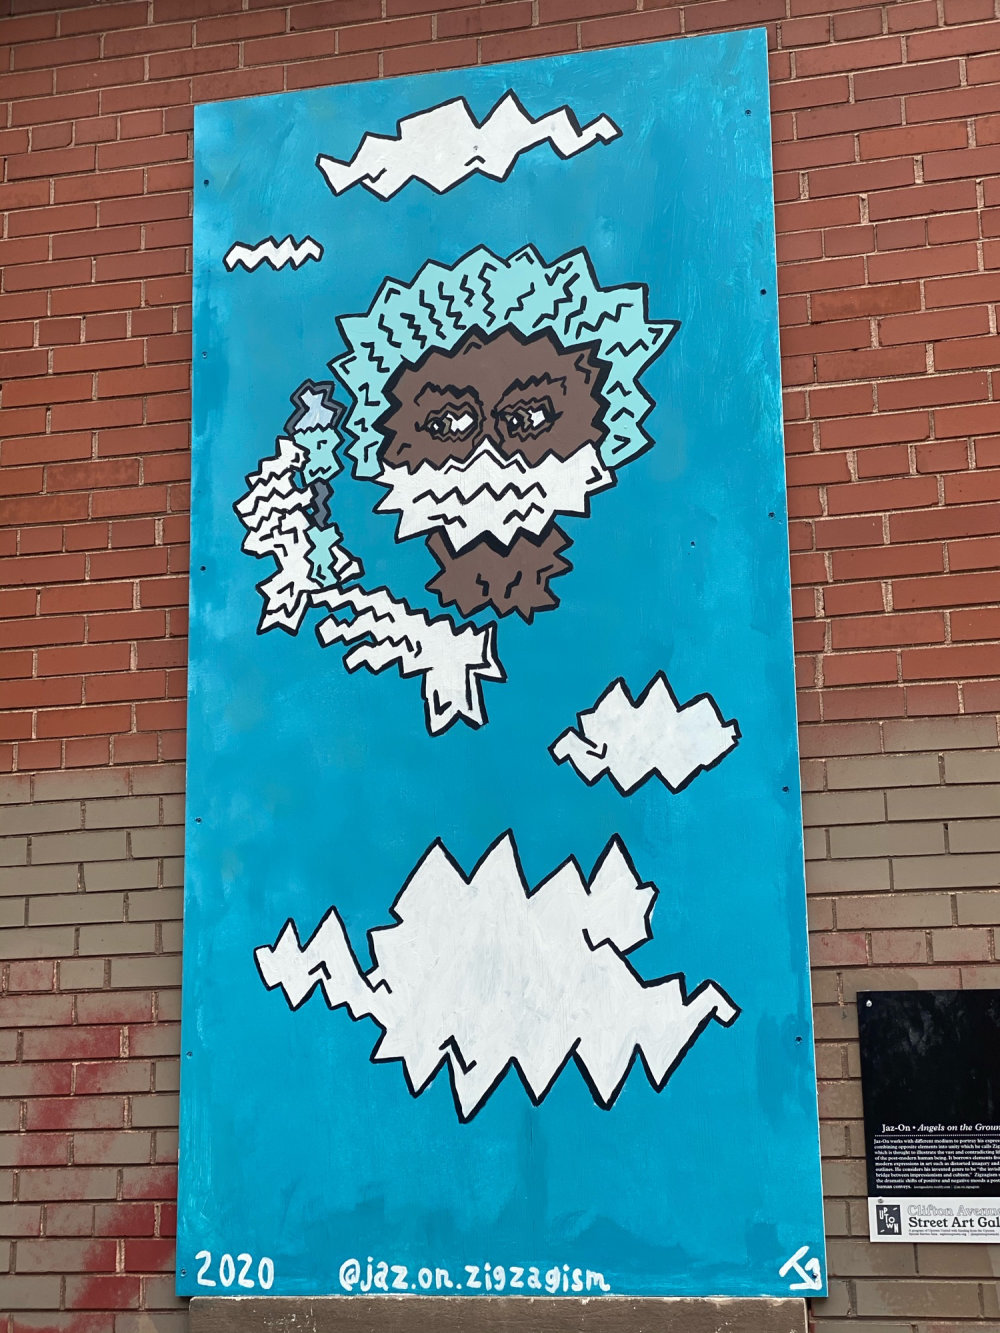 mural in Chicago by artist Jaz-On Zigzagism.